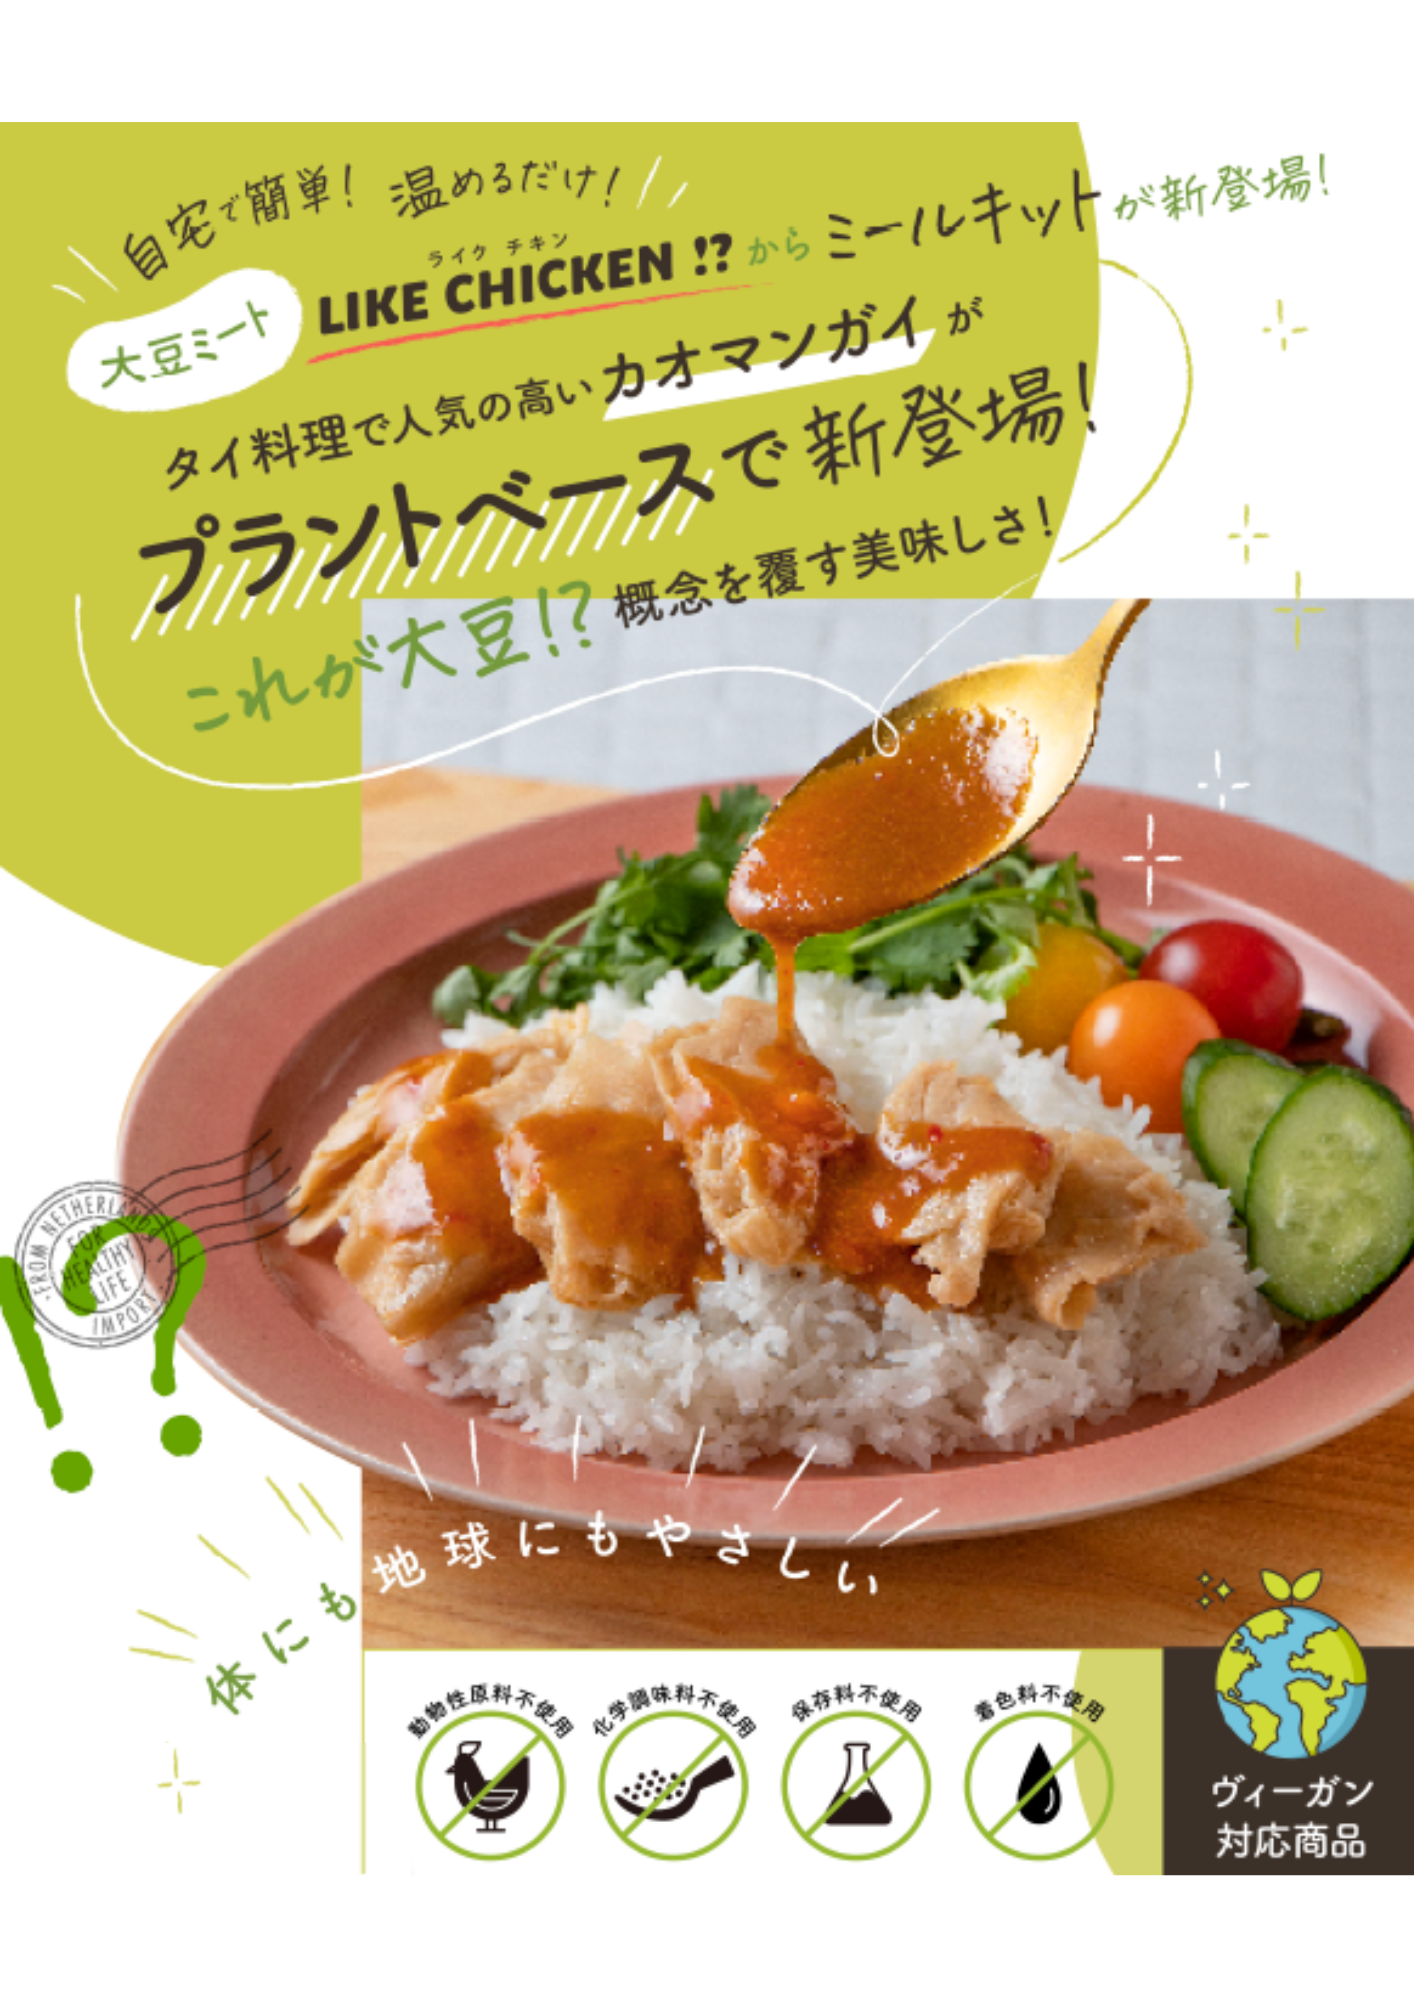 “ミールキット第1弾”新食感大豆ミート『LIKE CHICKEN!?』
を使用！タイ料理カオマンガイがプラントベースで11月4日に登場